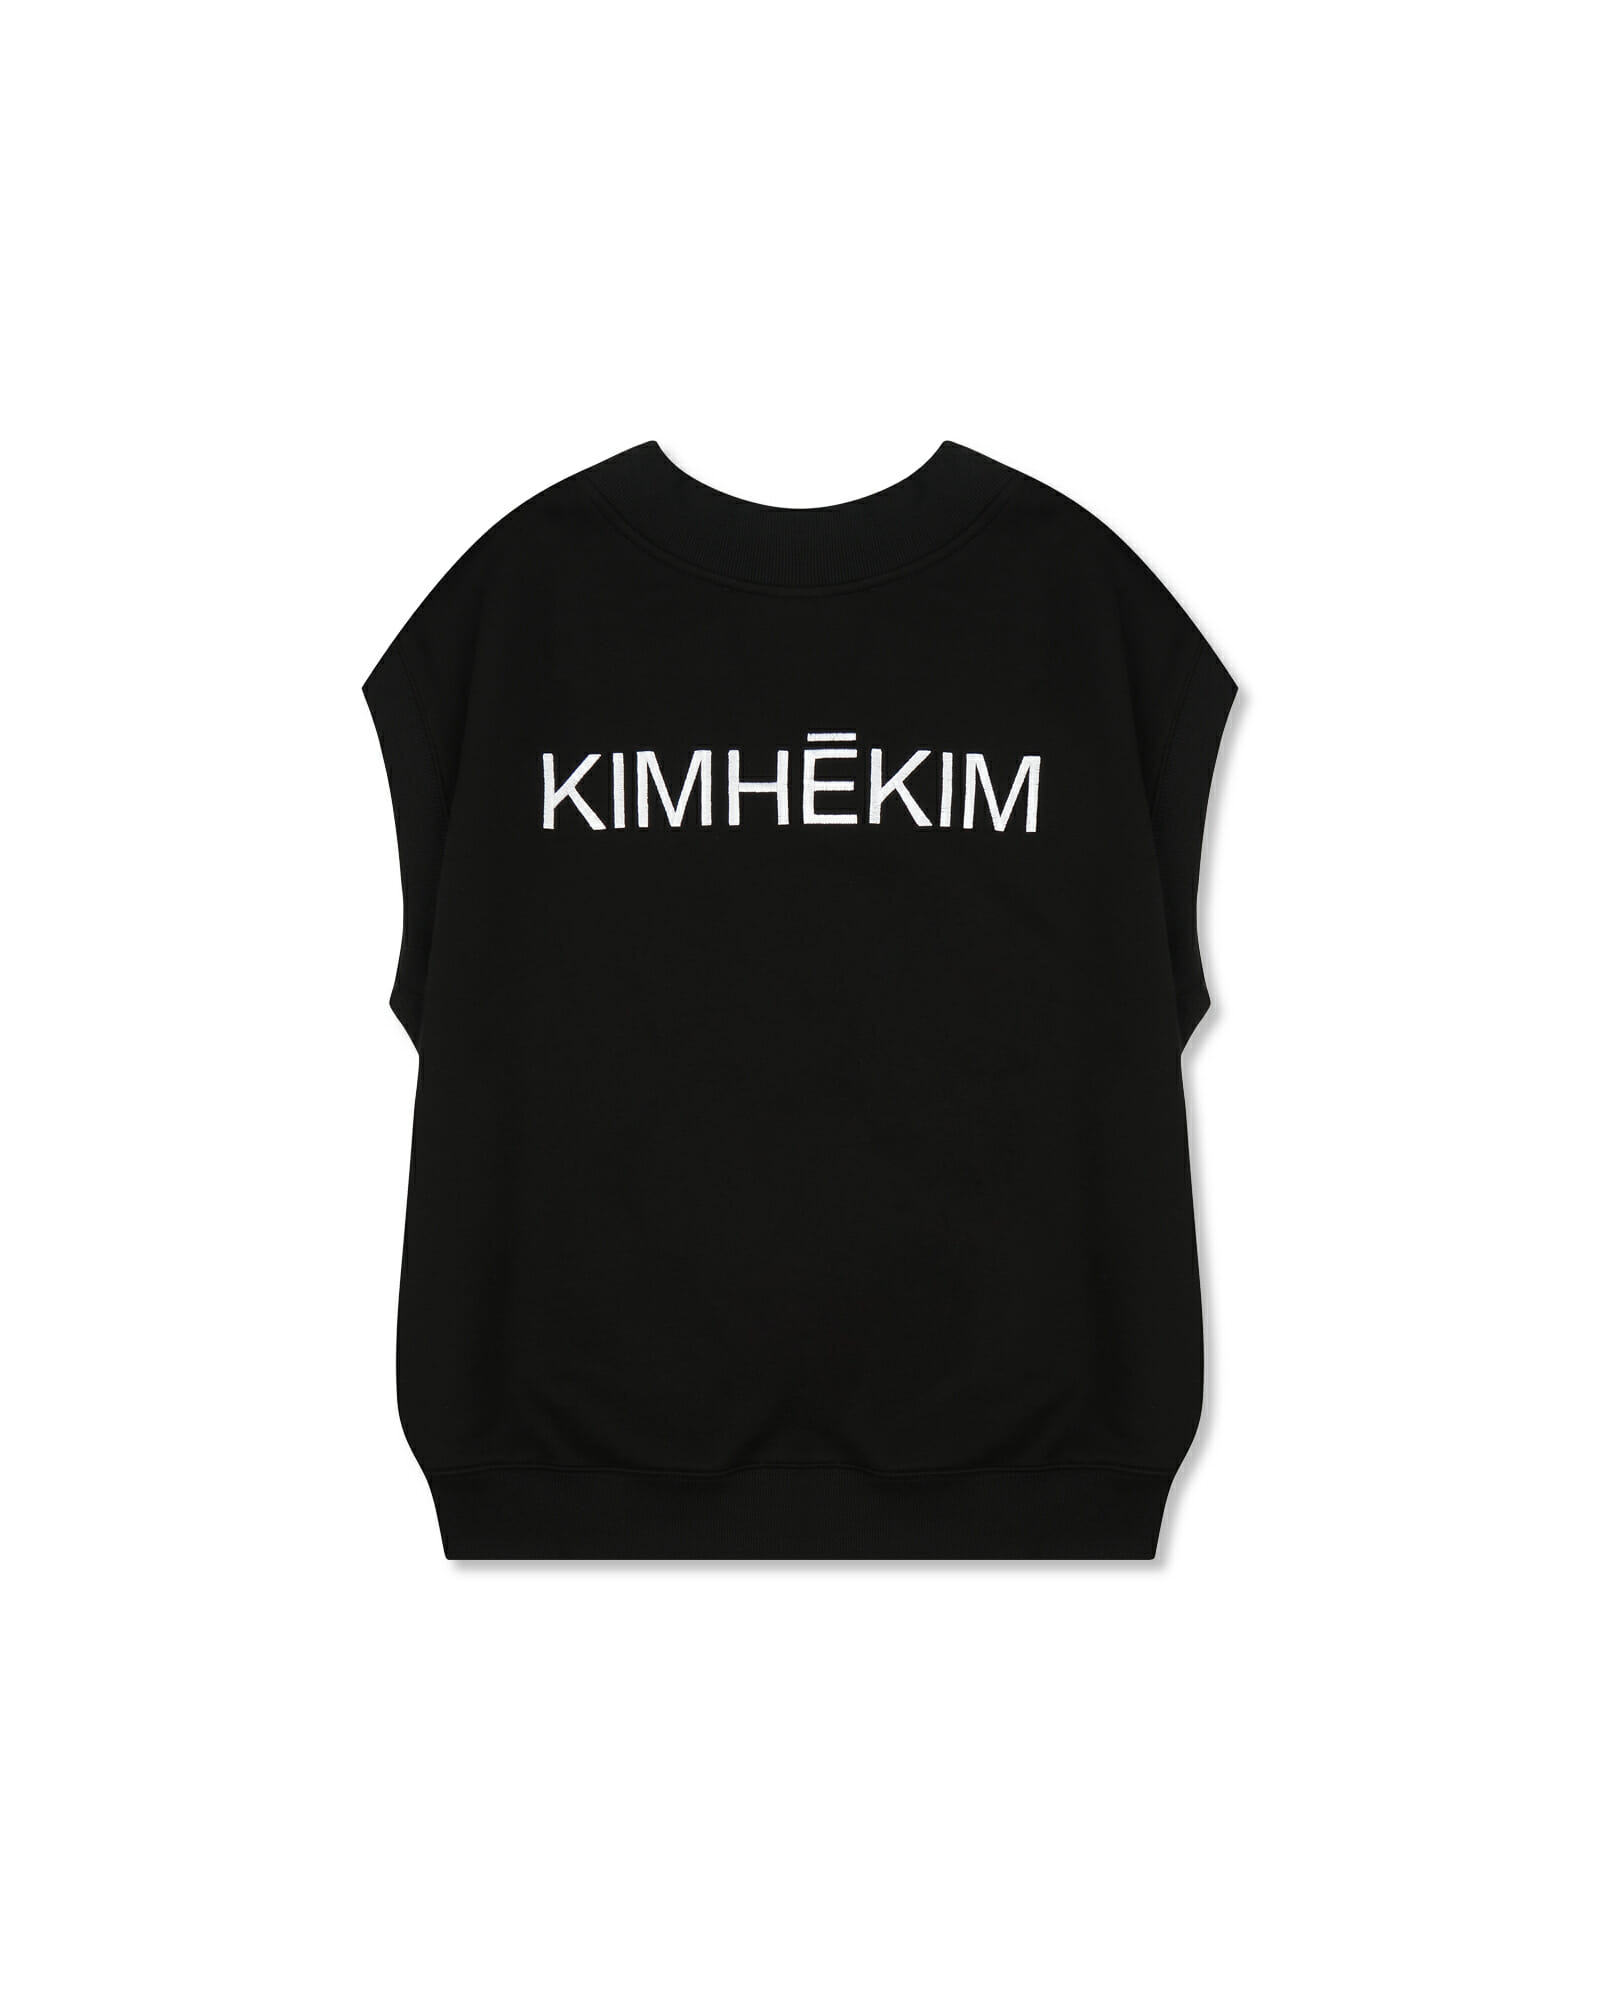 Sleeveless Sweatshirt (Black) - Kimhekim